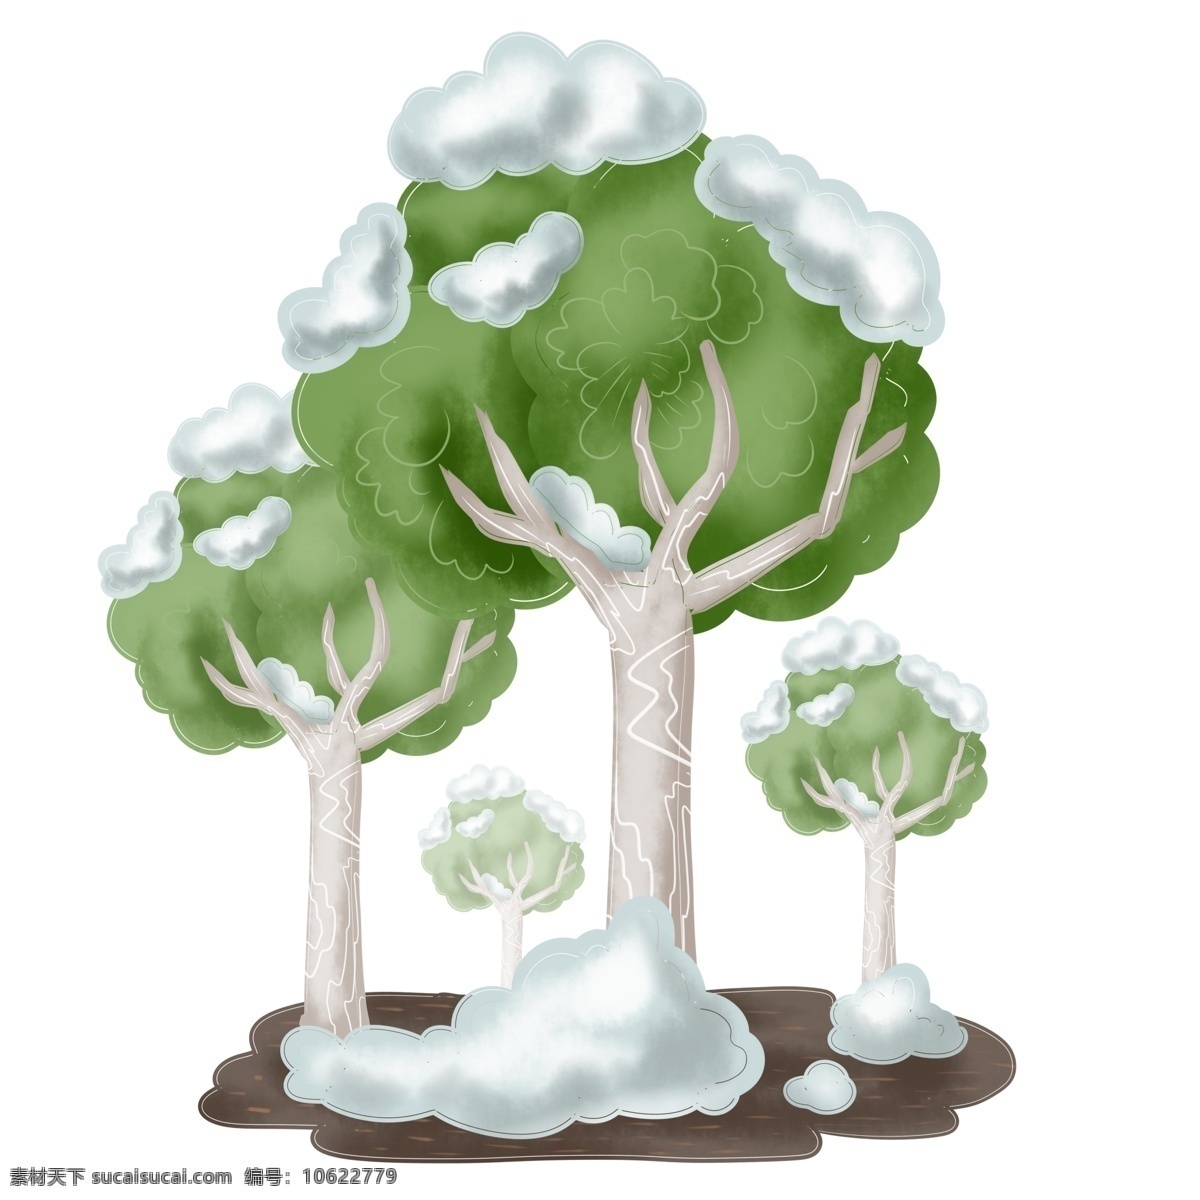 商用 手绘 冬季 下雪 雪 树 圣诞节 植物 白桦树 元素 插画 海报素材 冬天